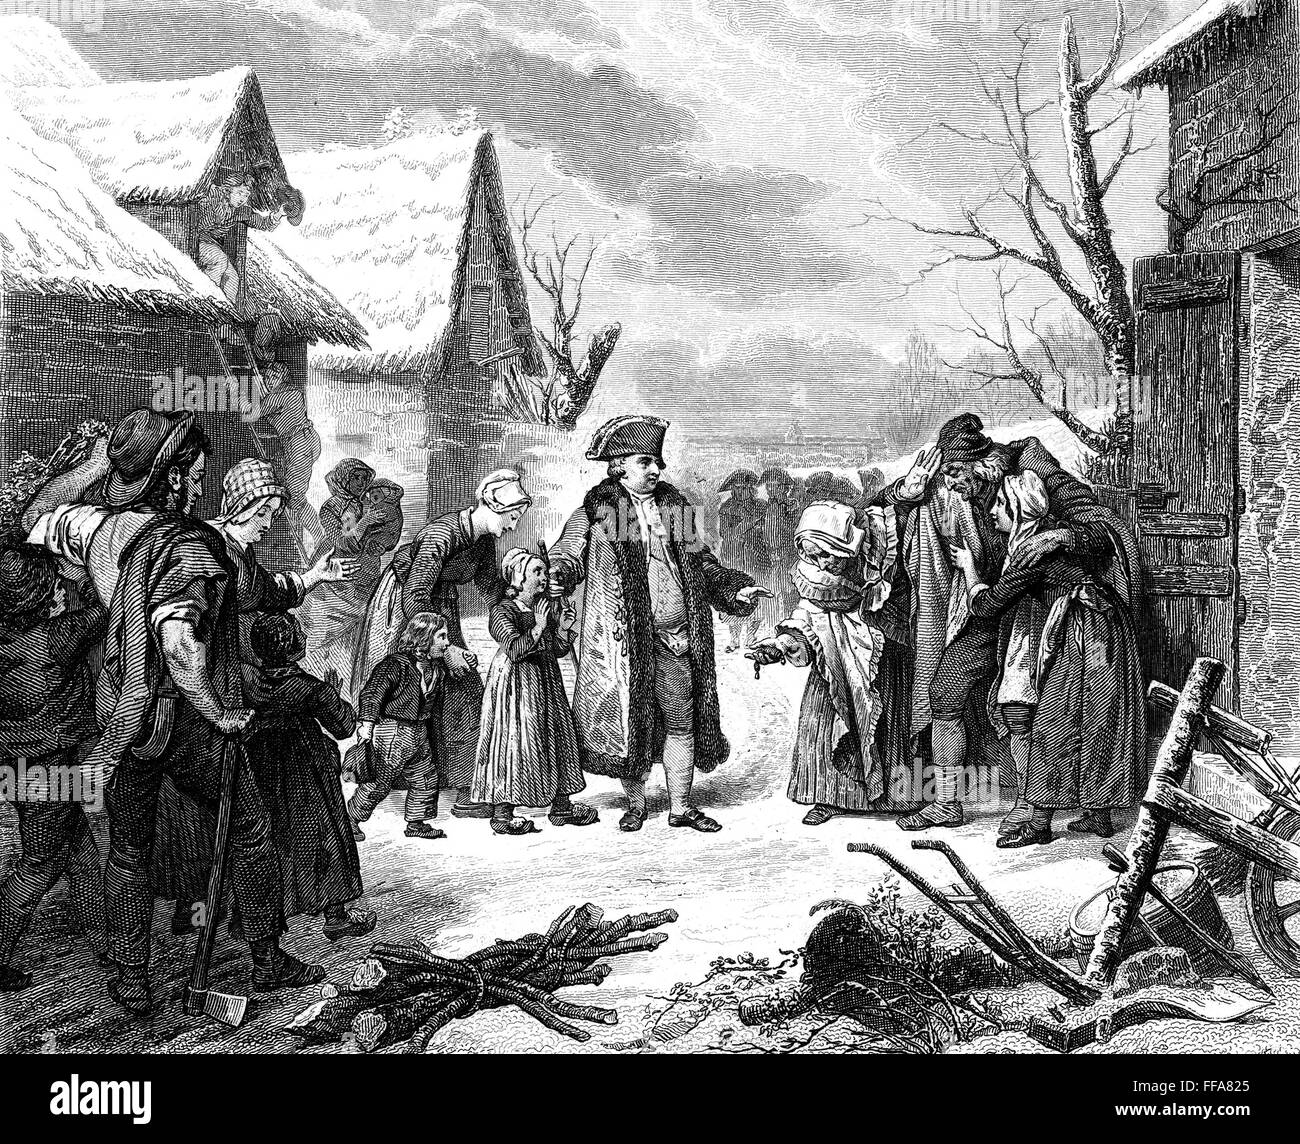 Картина голод. Неурожай 1788 года во Франции. Людовик 16 голод. Людовик 16 раздает милостыню. Крестьяне во Франции 18 века.